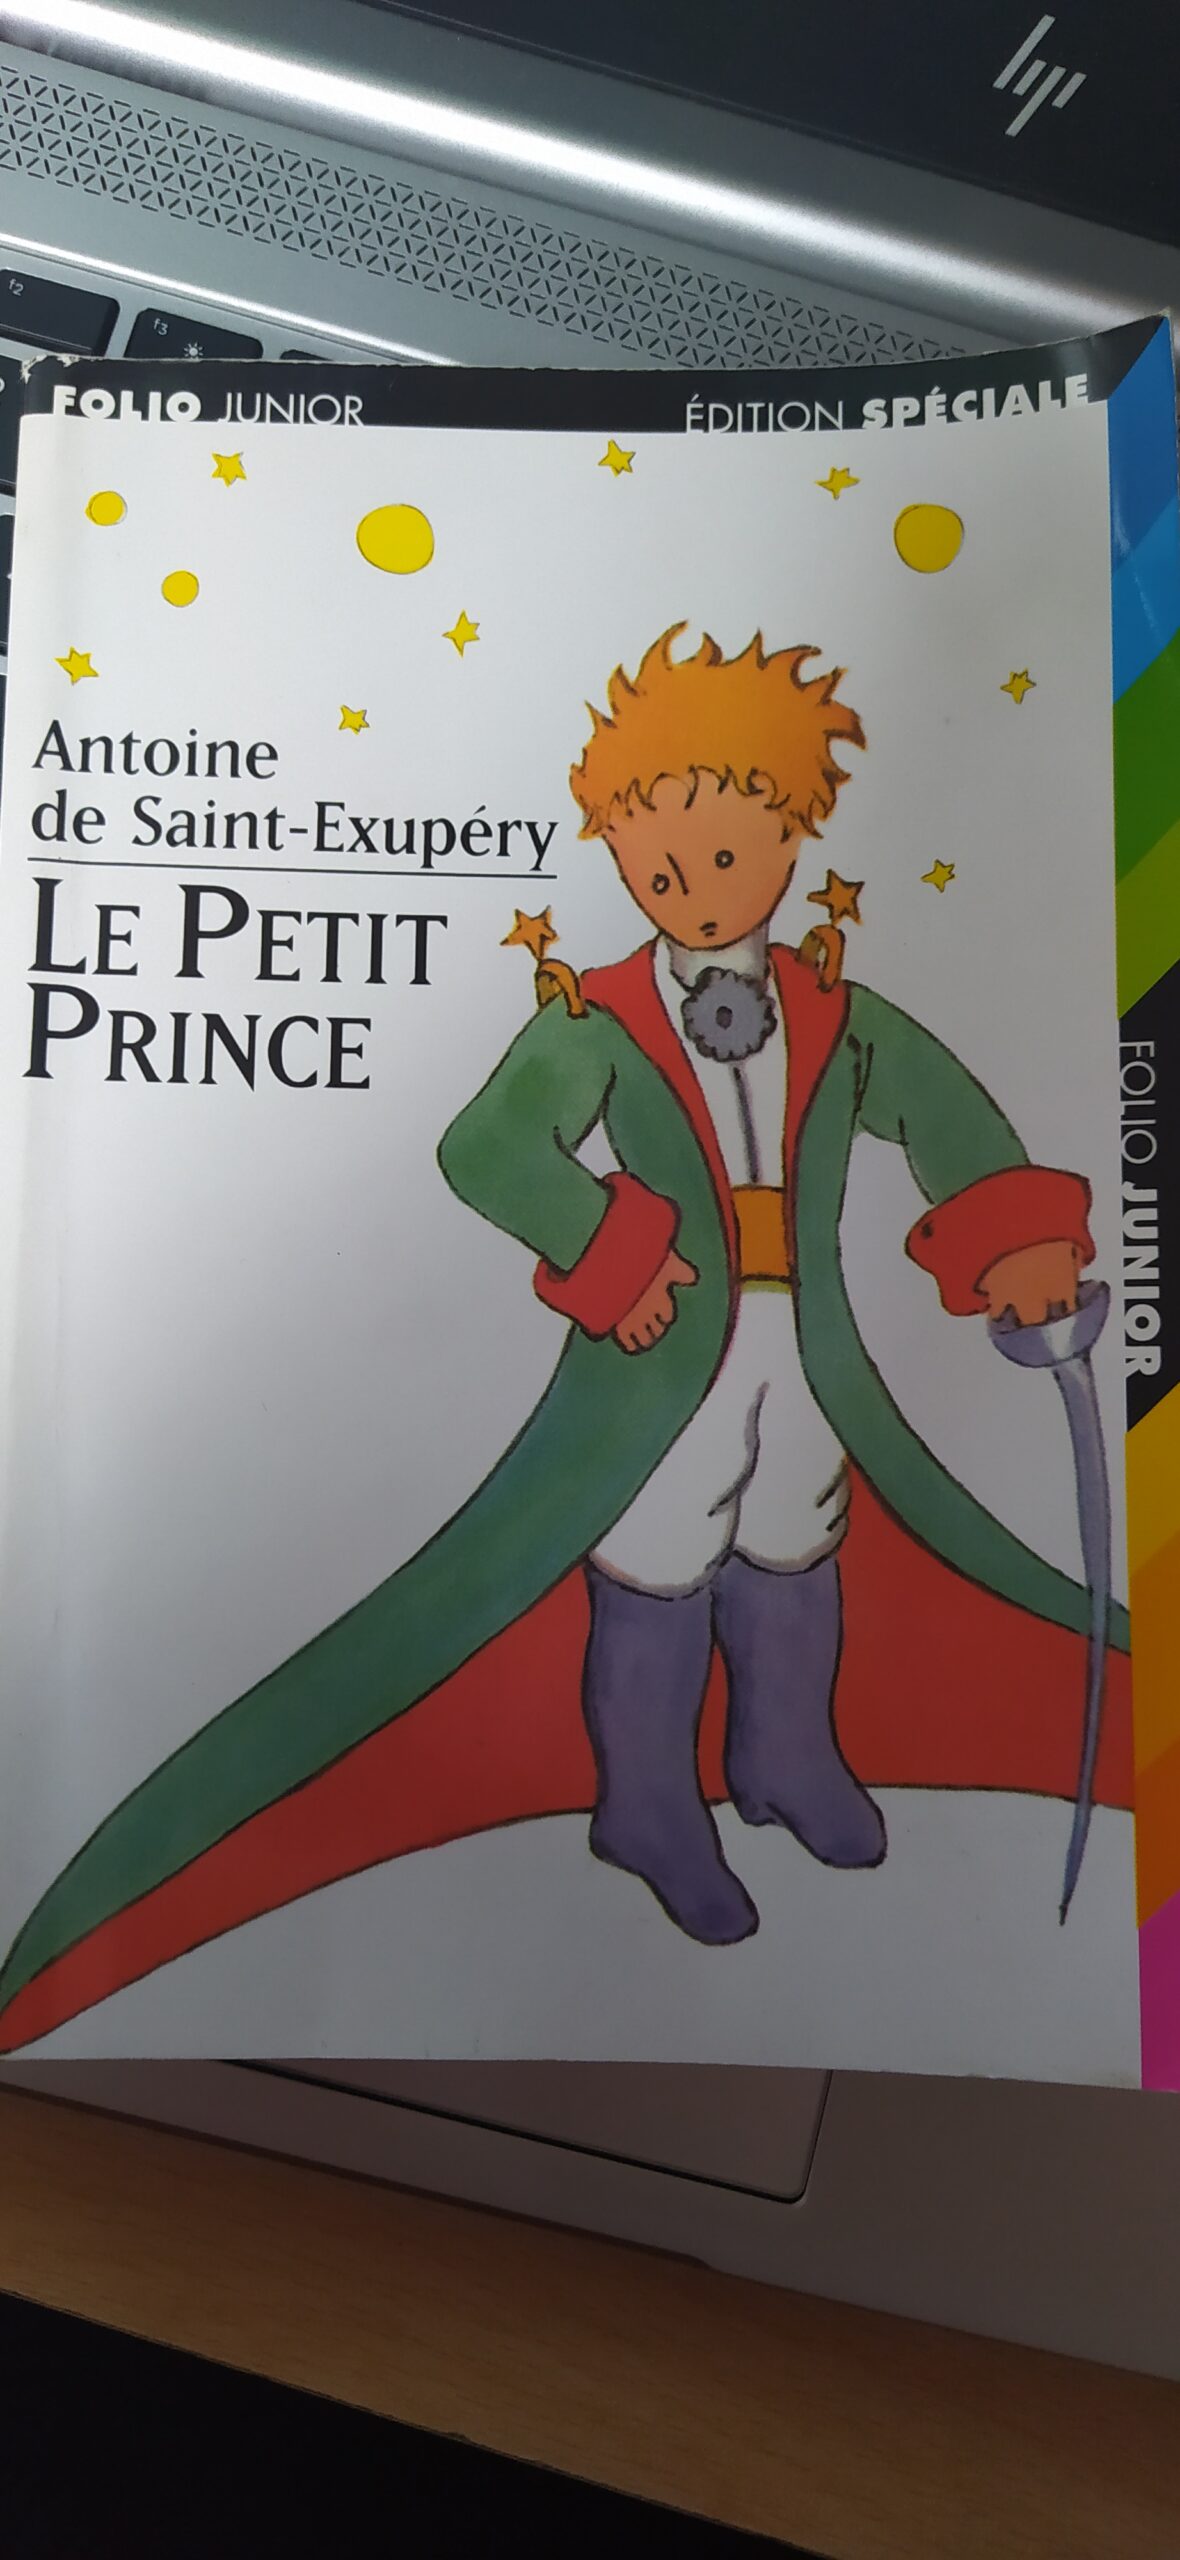 Comment expliquer le Petit Prince de Saint-Exupéry à son enfant ? 